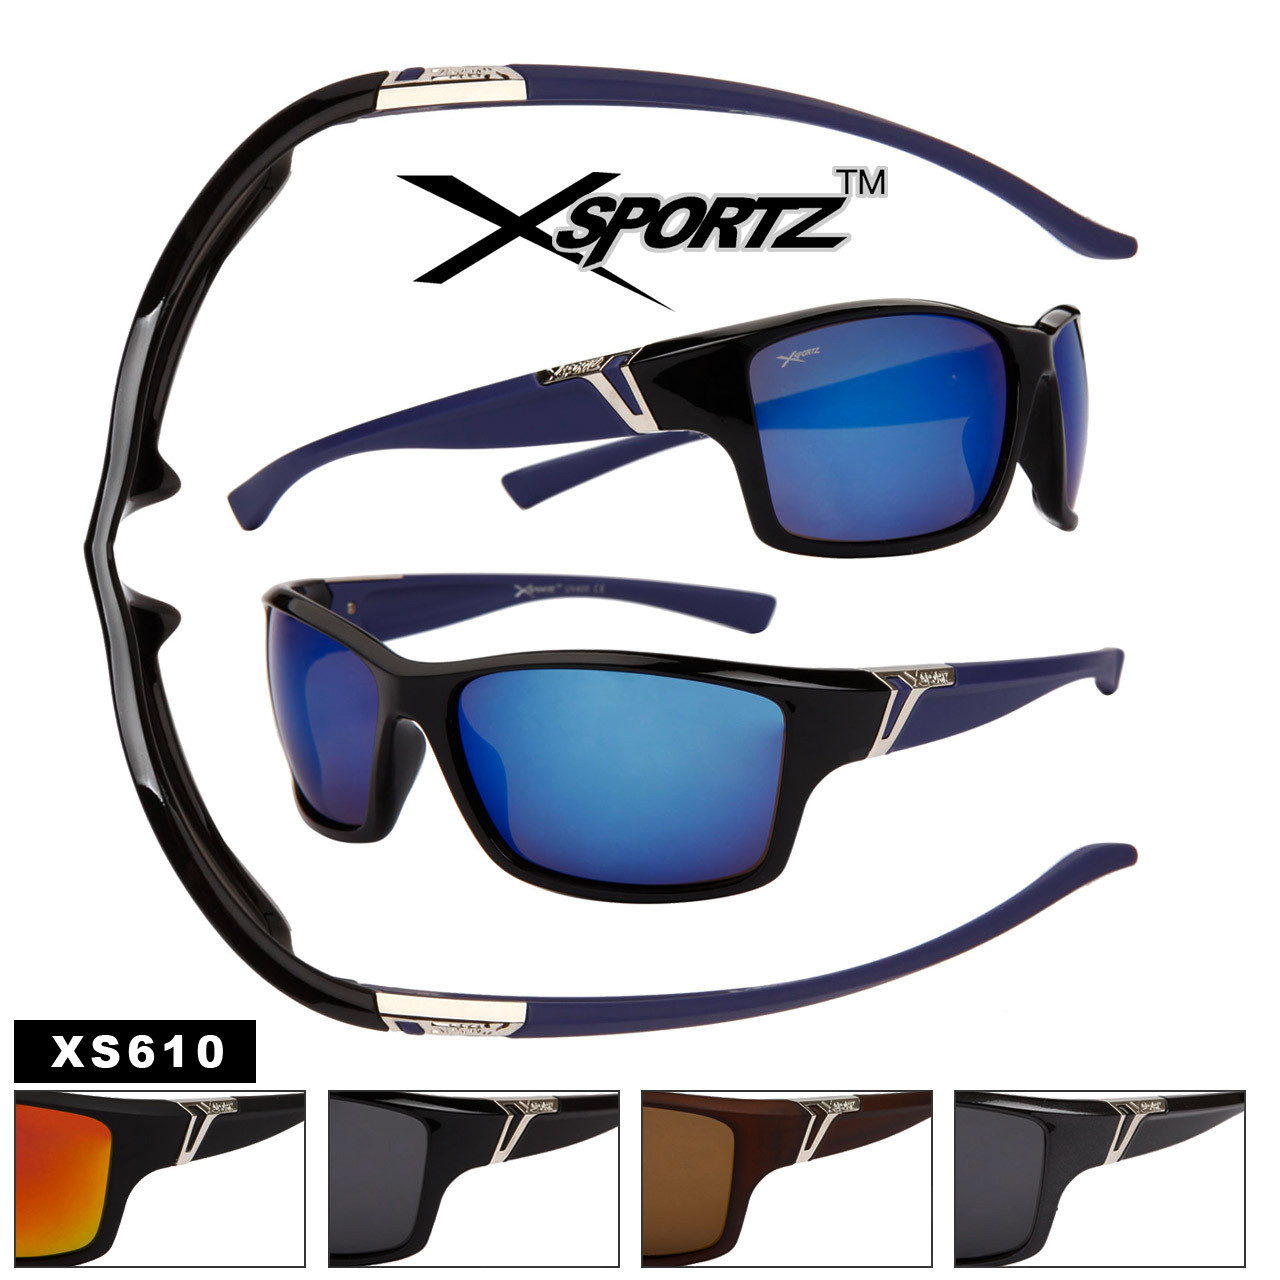 Wholesale Xsportz™ Sunglasses by the Dozen - Style # XS610 (12 pcs.) Assorted Colors